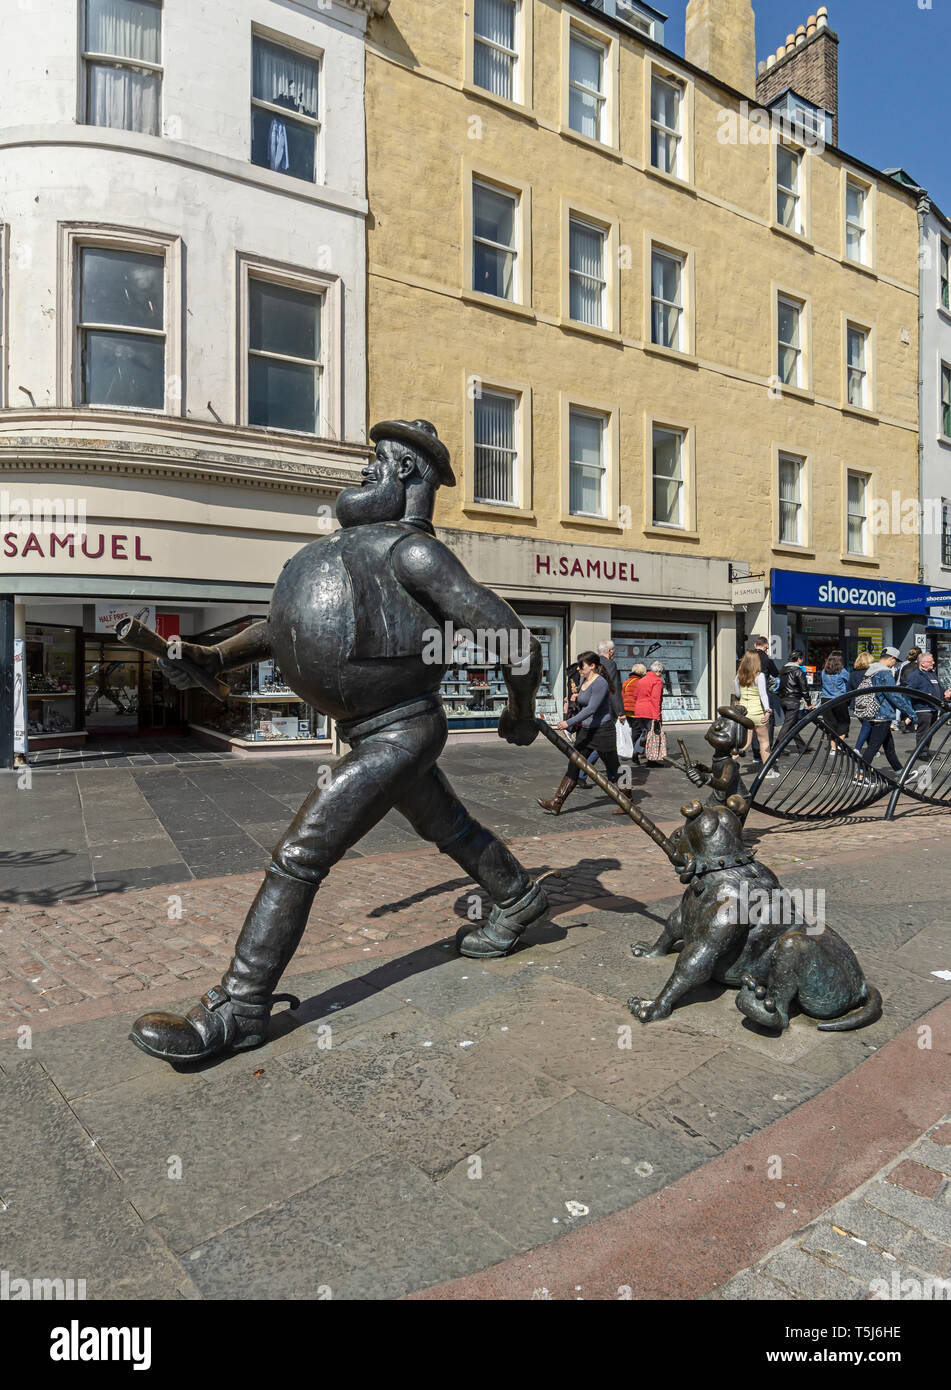 Desperate Dan statua in bronzo sulla base del carattere nel comic britannico rivista Il Dandy situato in High Street presso la piazza della città scozzese di Dundee REGNO UNITO Foto Stock